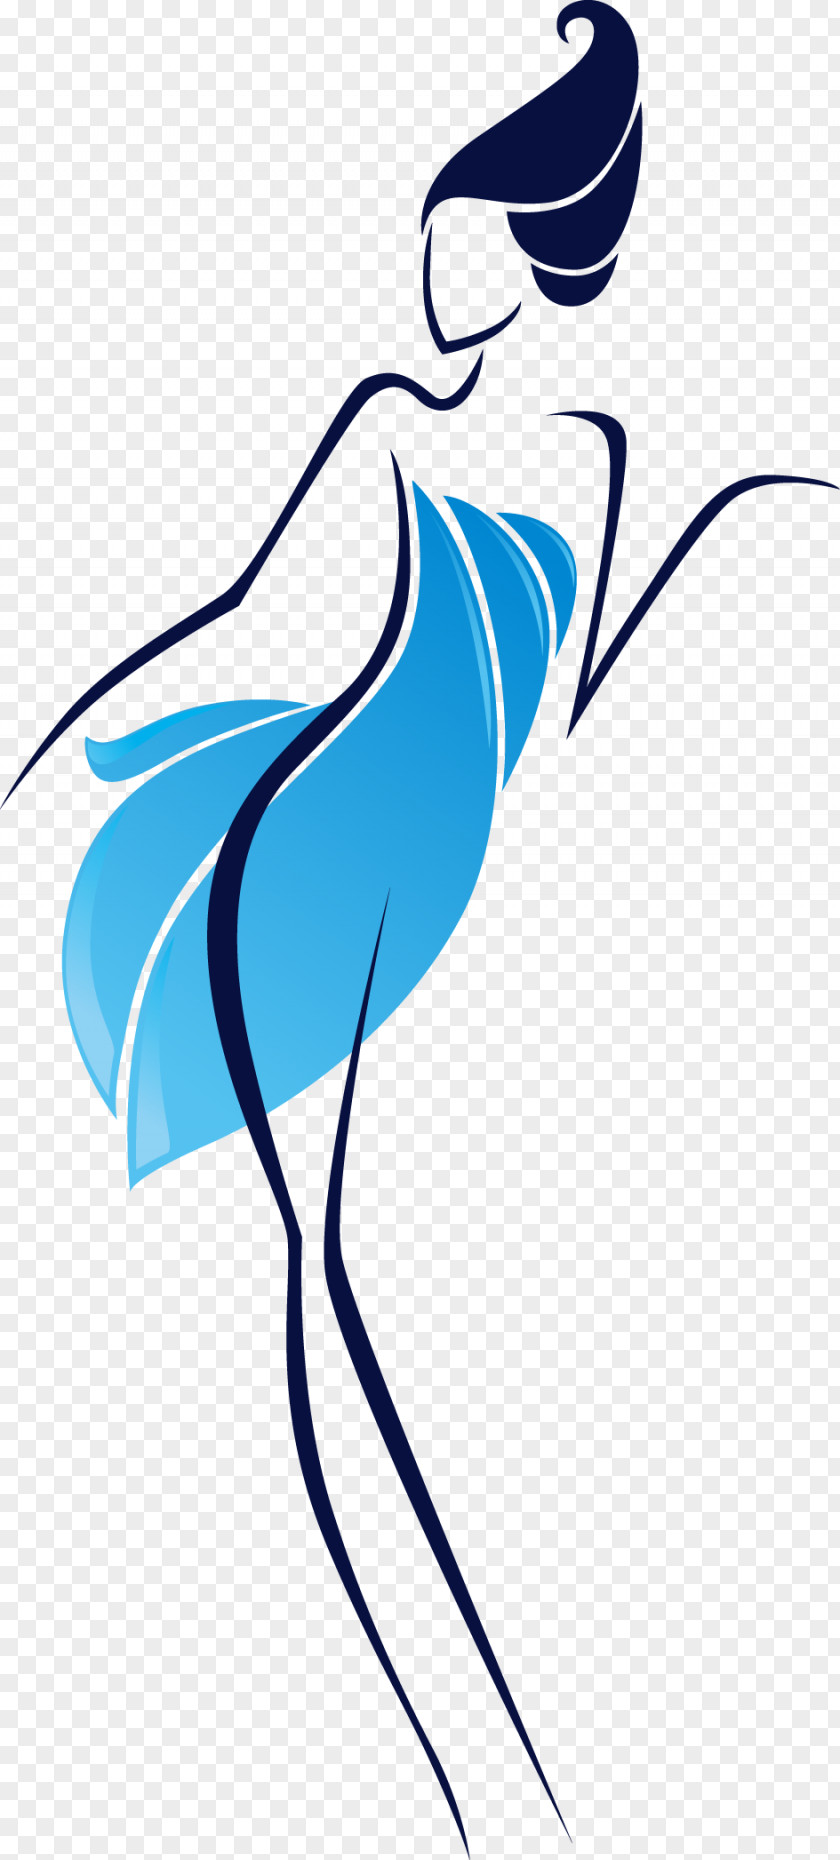 Girl Silhouette Vecteur PNG Vecteur, line, woman wearing blue dress clipart PNG